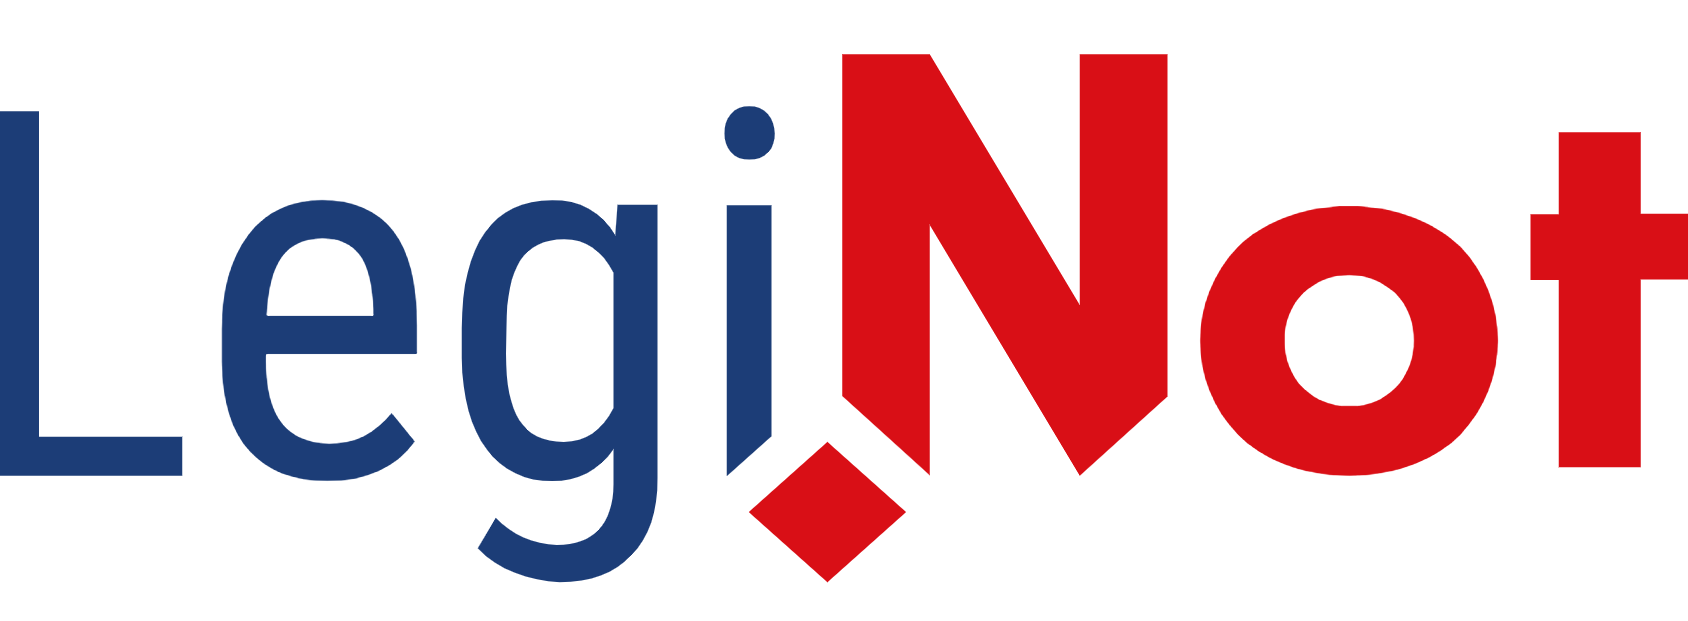 Logo LegiNot